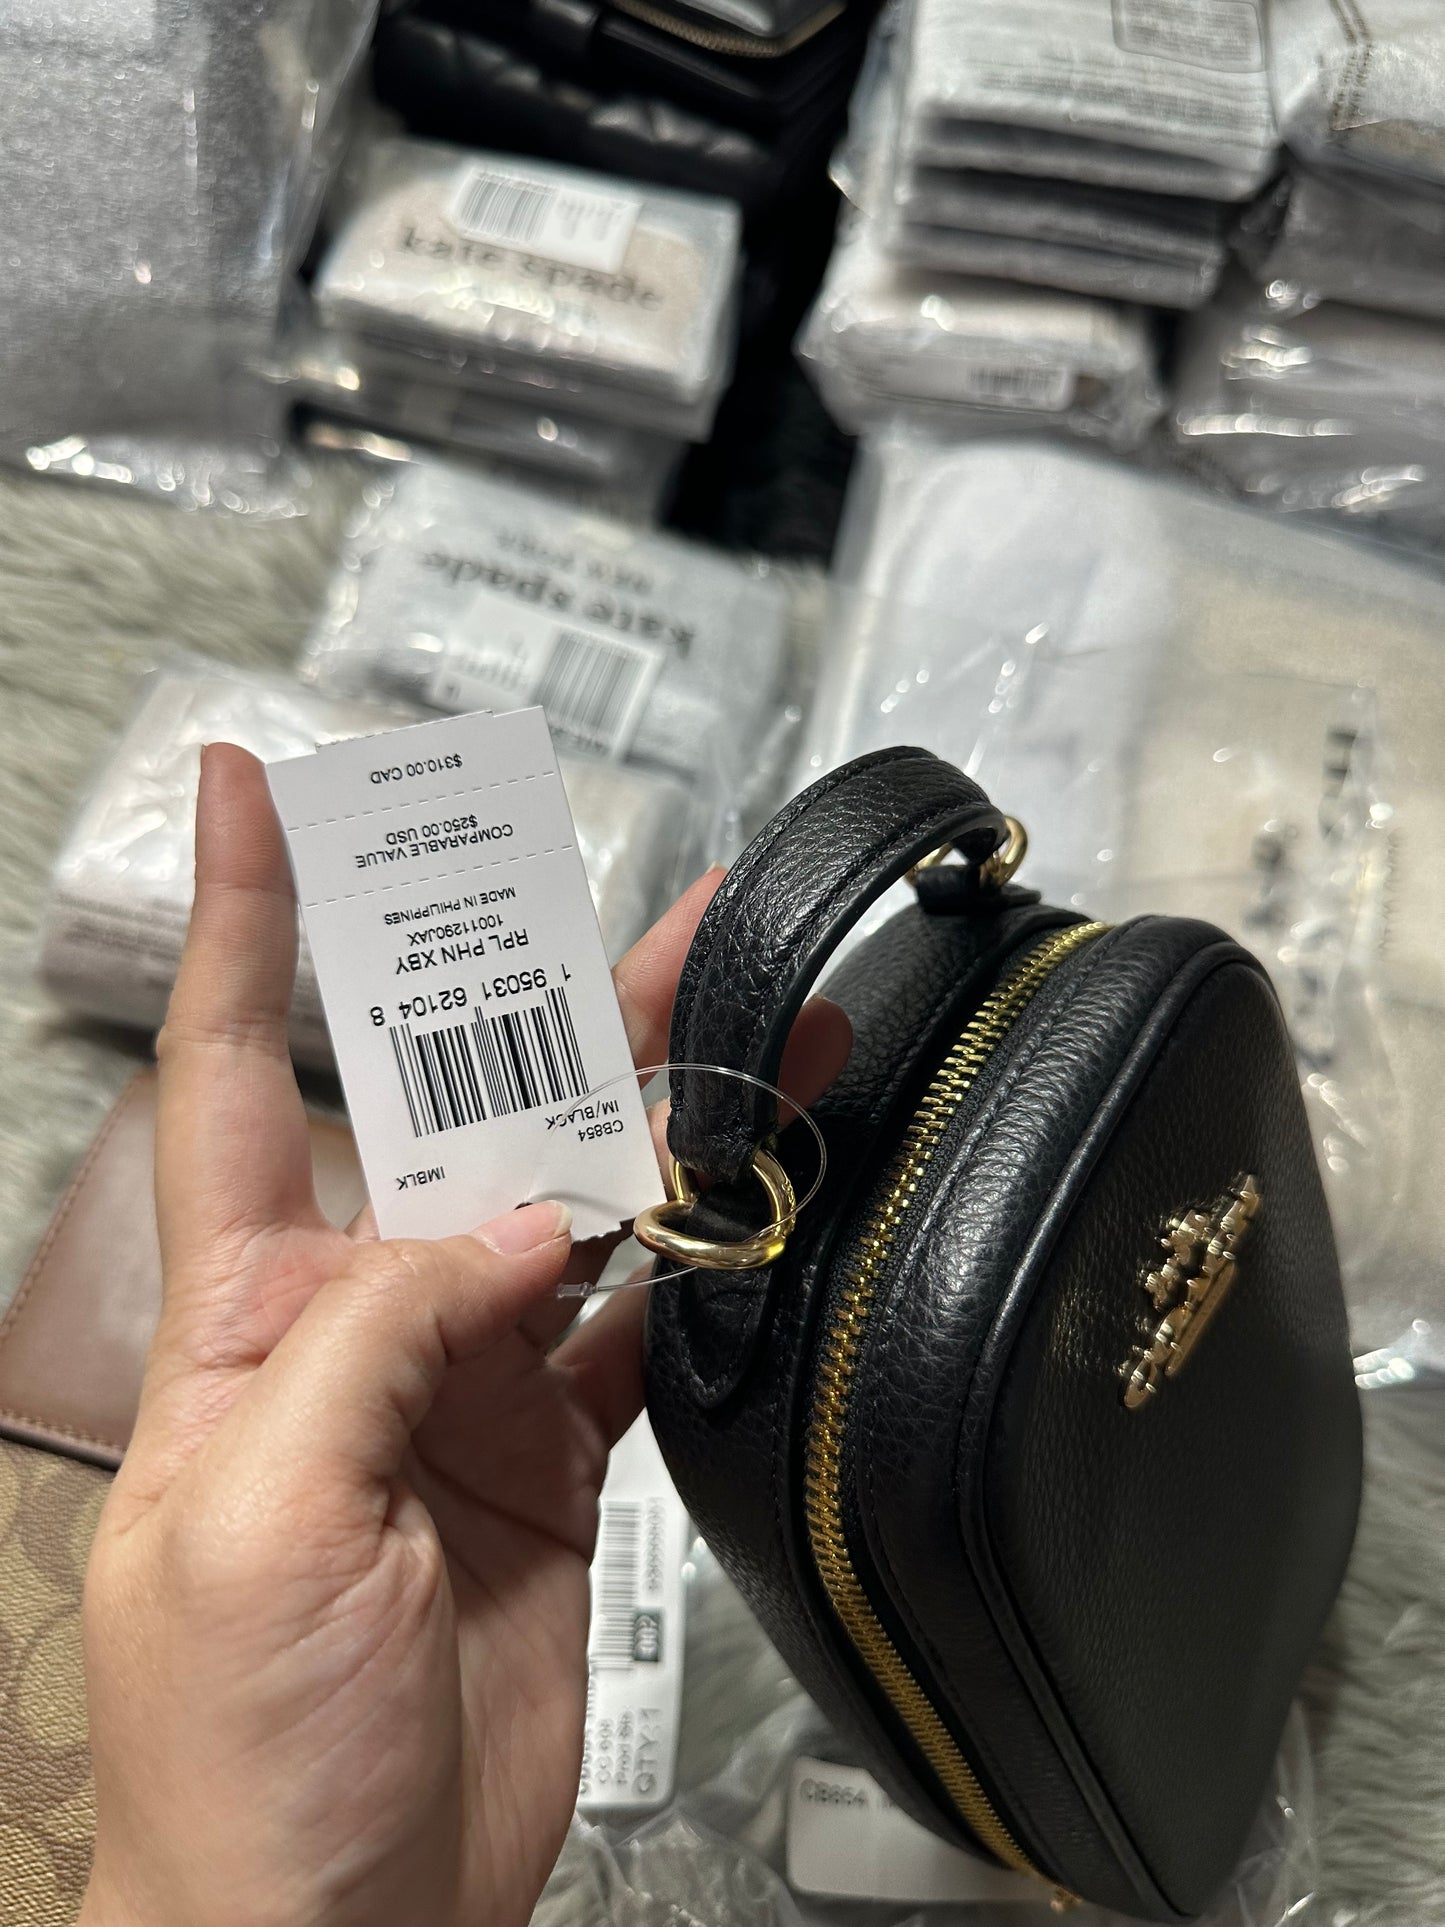 AUTHENTIC/ORIGINAL COACH Eva Phone Crossbody Small Bag Black